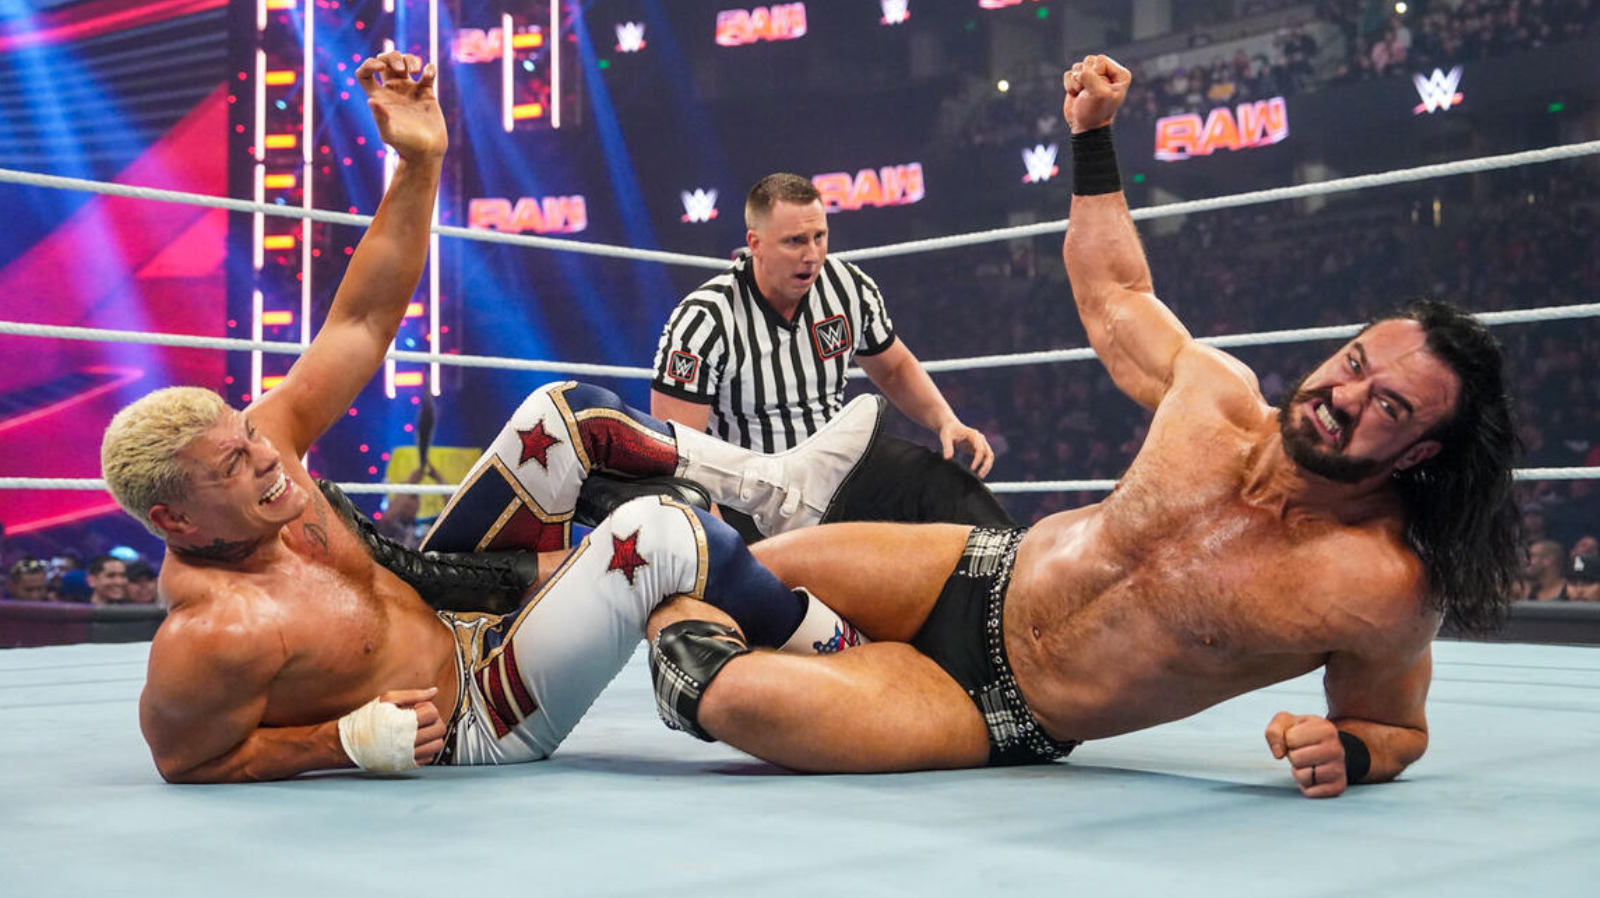 Tommy Dreamer evalúa la lucha entre Drew McIntyre y Cody Rhodes de WWE Raw